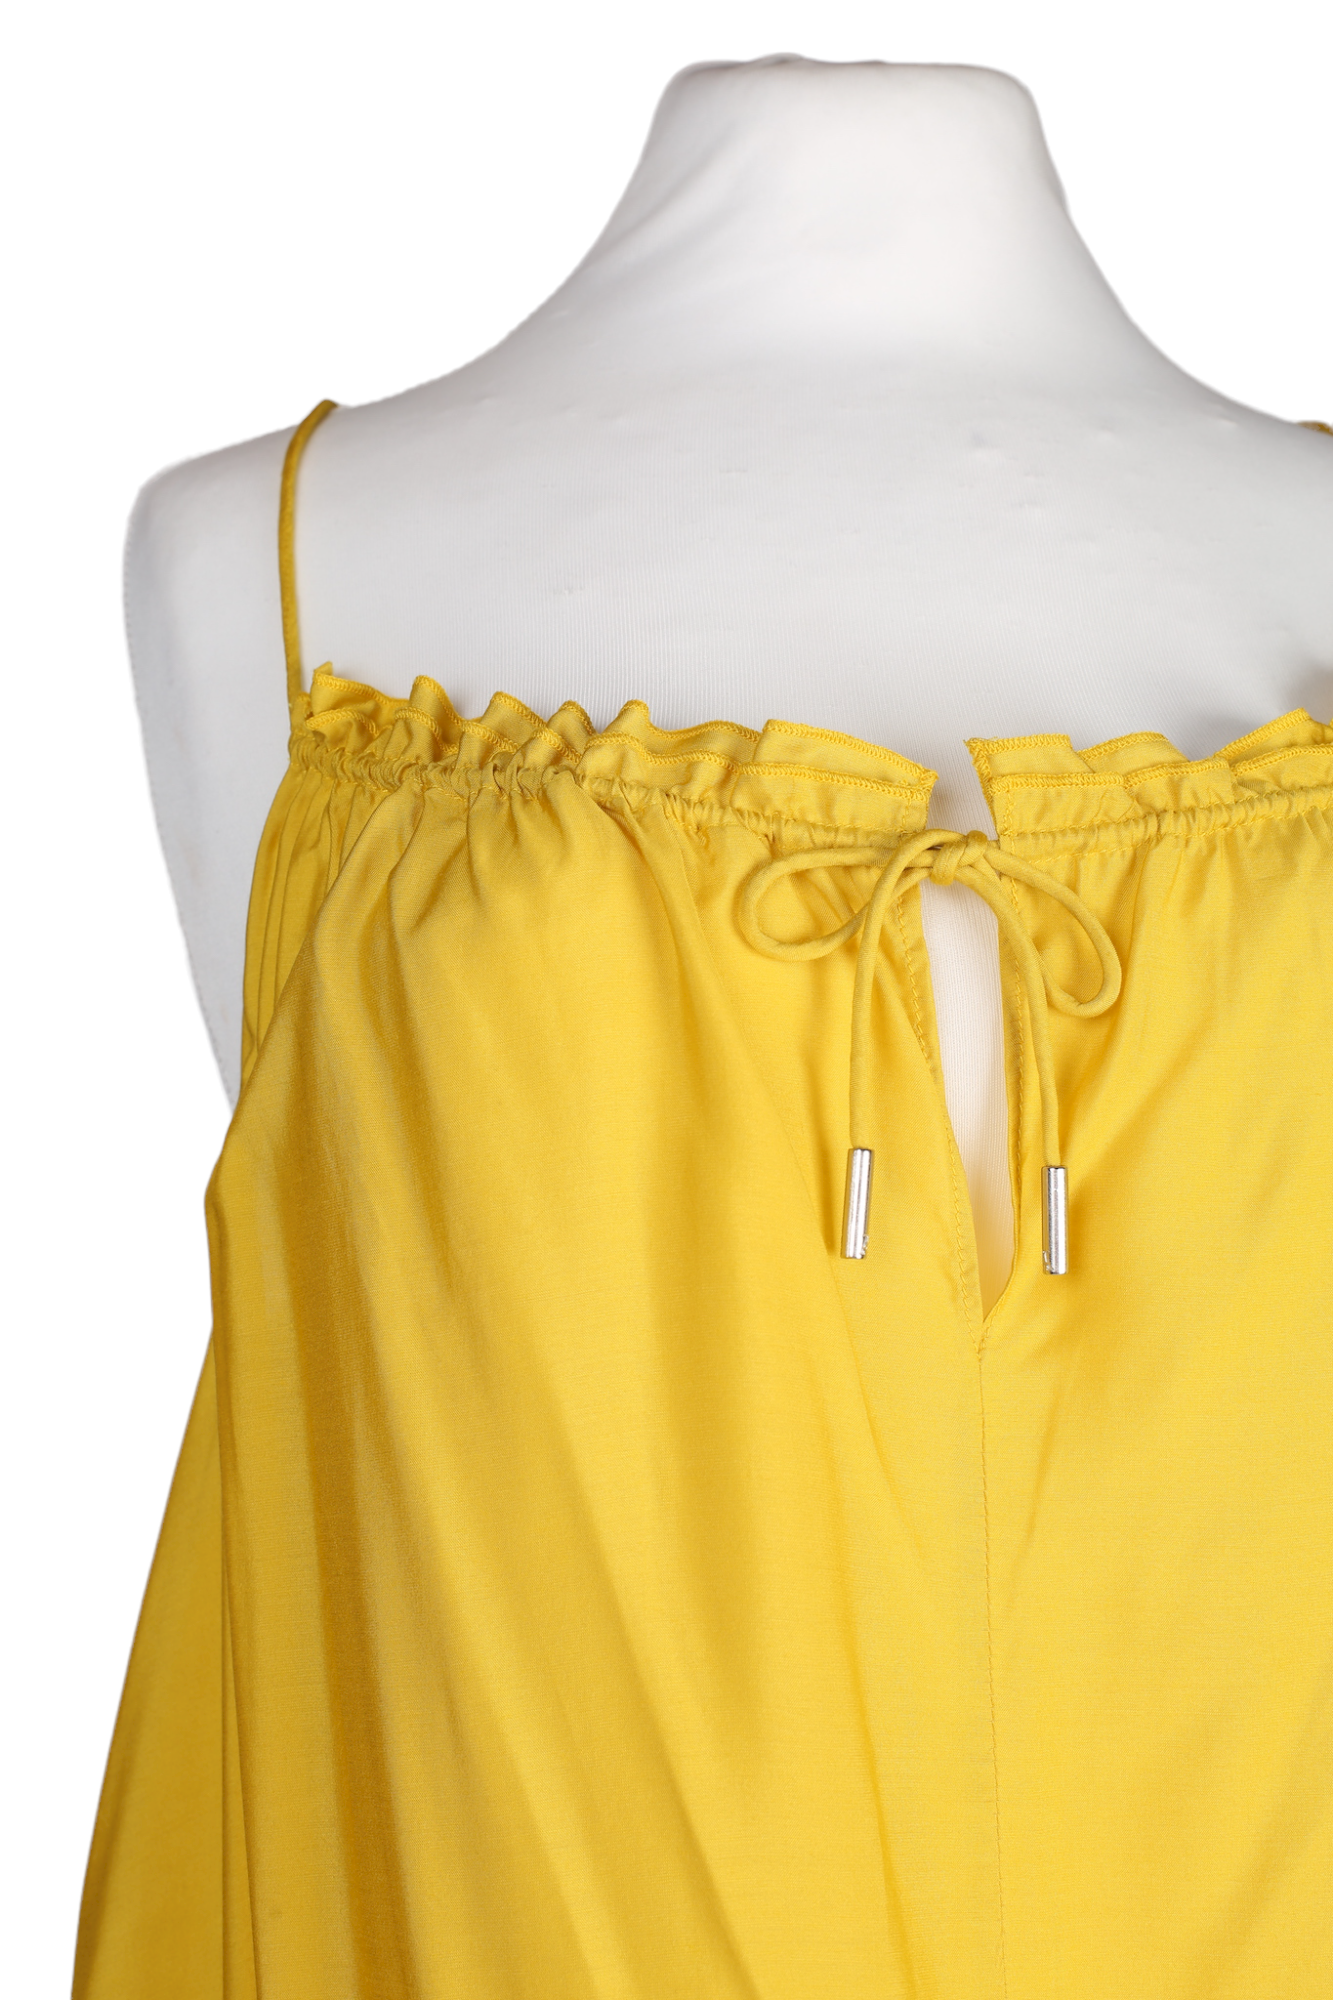 فستان ماكسي بلا أكمام صيفي باللون الأصفر من متجر إليس تمبرلي